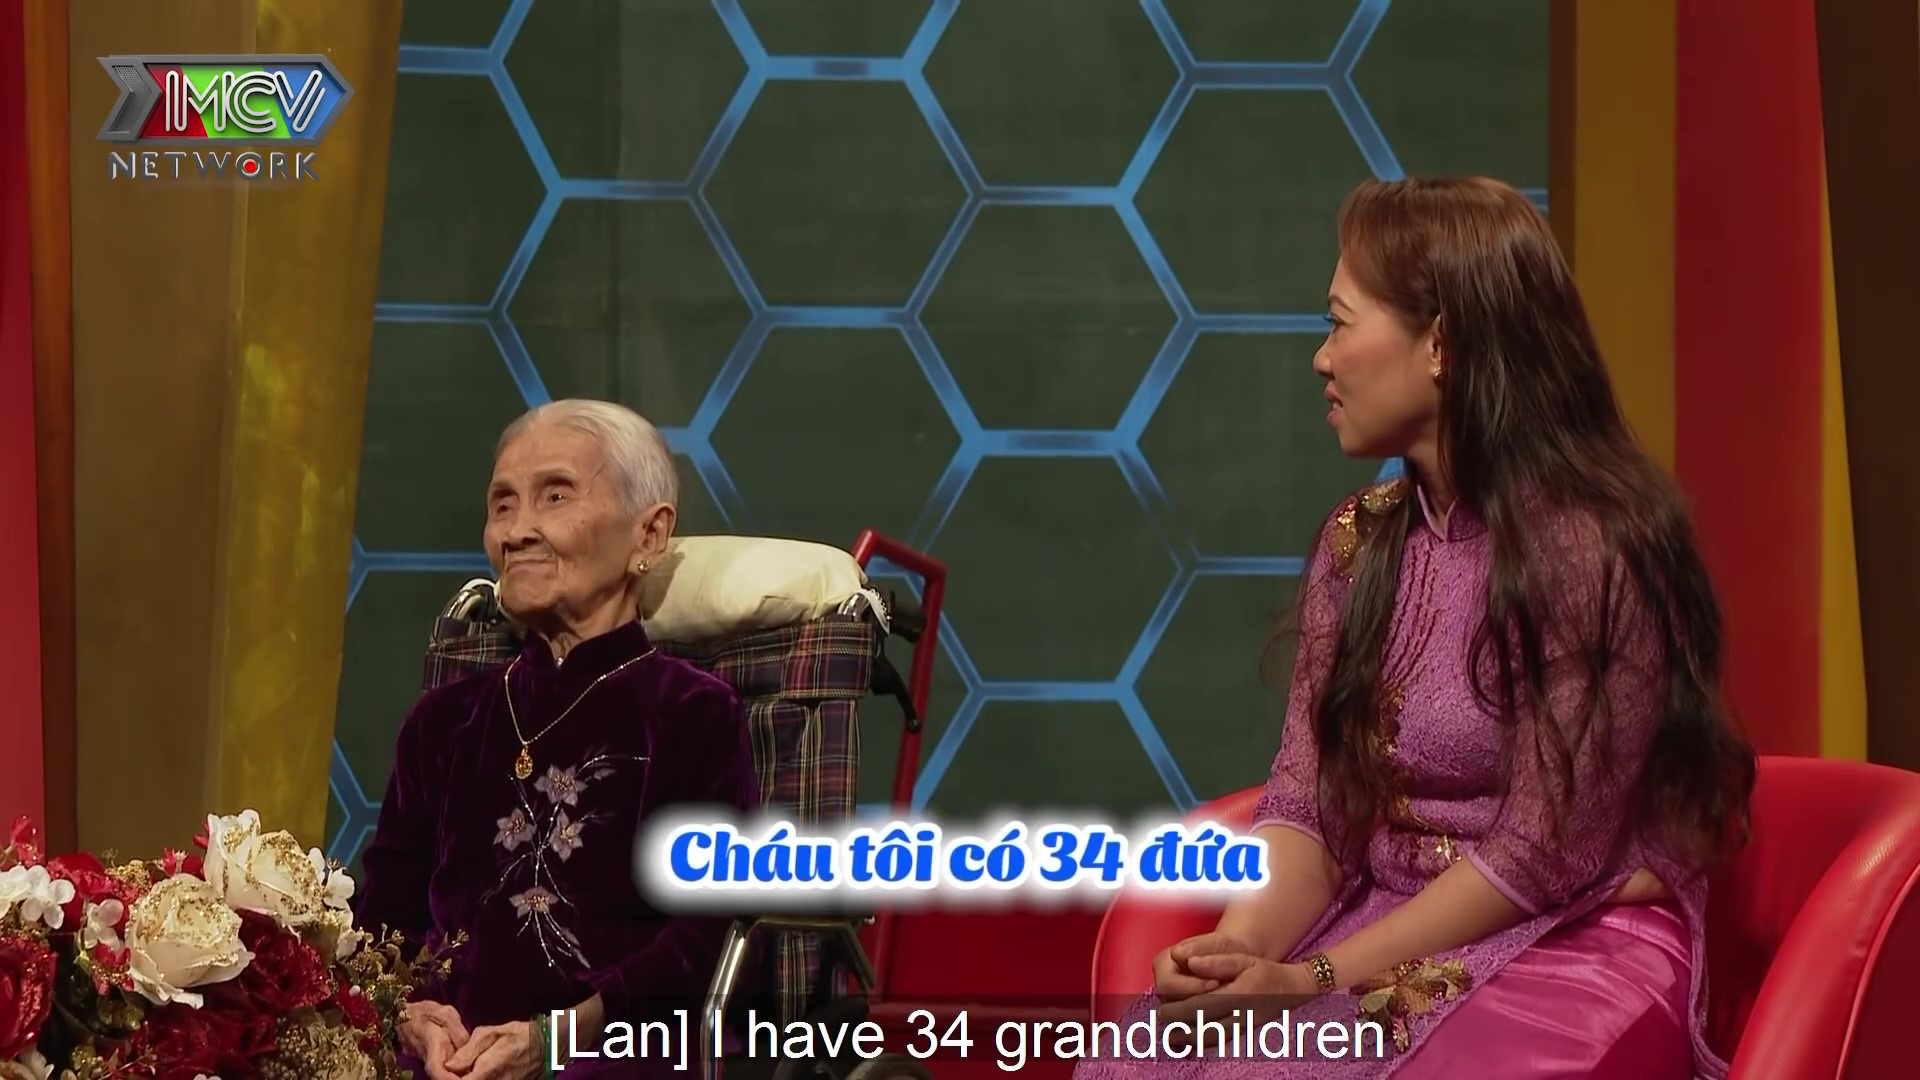 Sững sờ với mẹ chồng 101 tuổi, sáng láng minh mẫn, kể vanh vách chuyện nàng dâu 34kg - Ảnh 2.